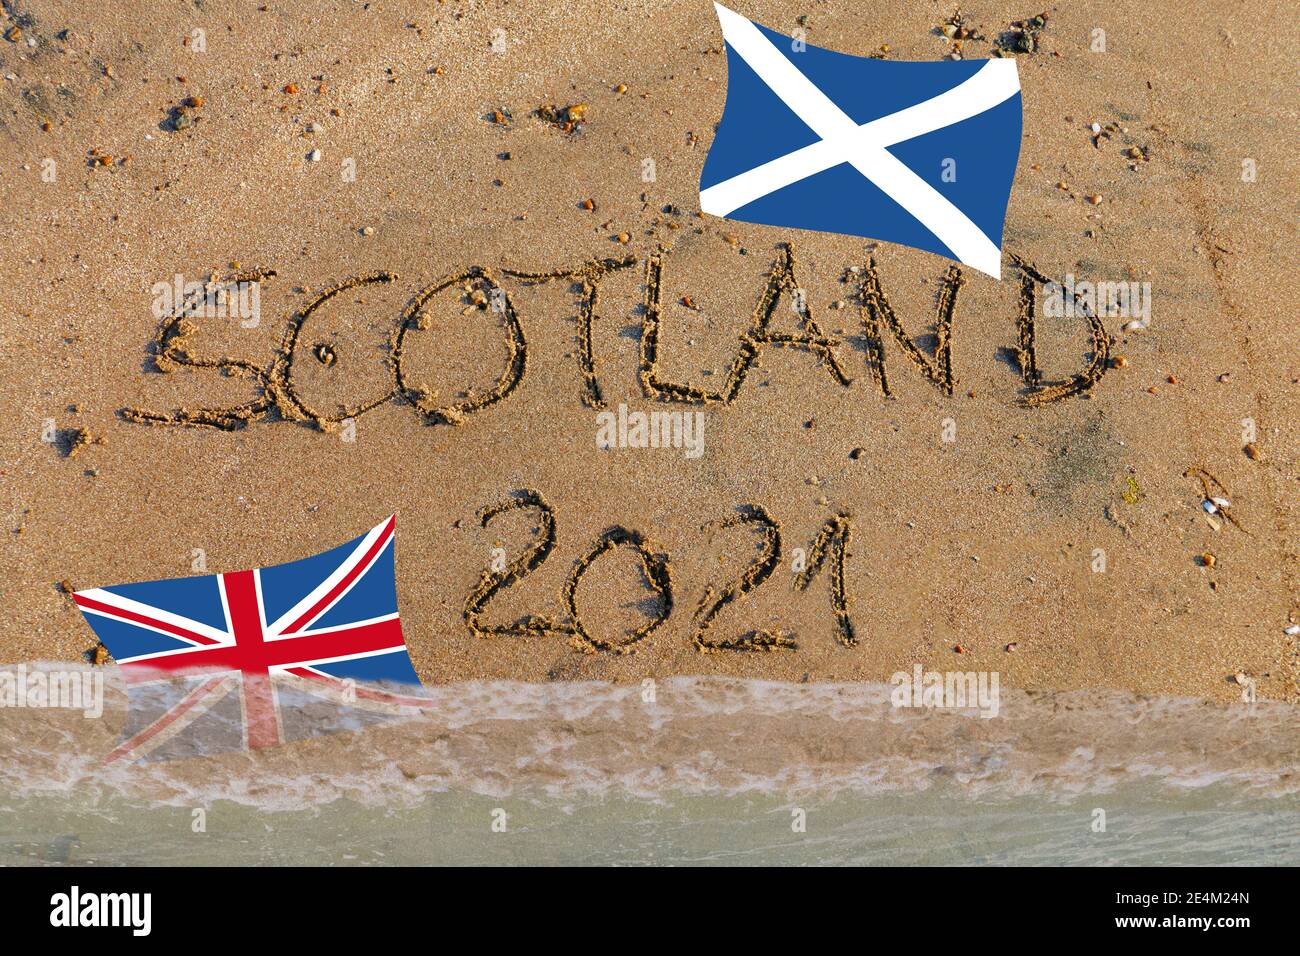 Scotland 2021 in Sand geschrieben, Schottische Flagge oben, Britische Flagge wird vom Wasser überflutet Stock Photo